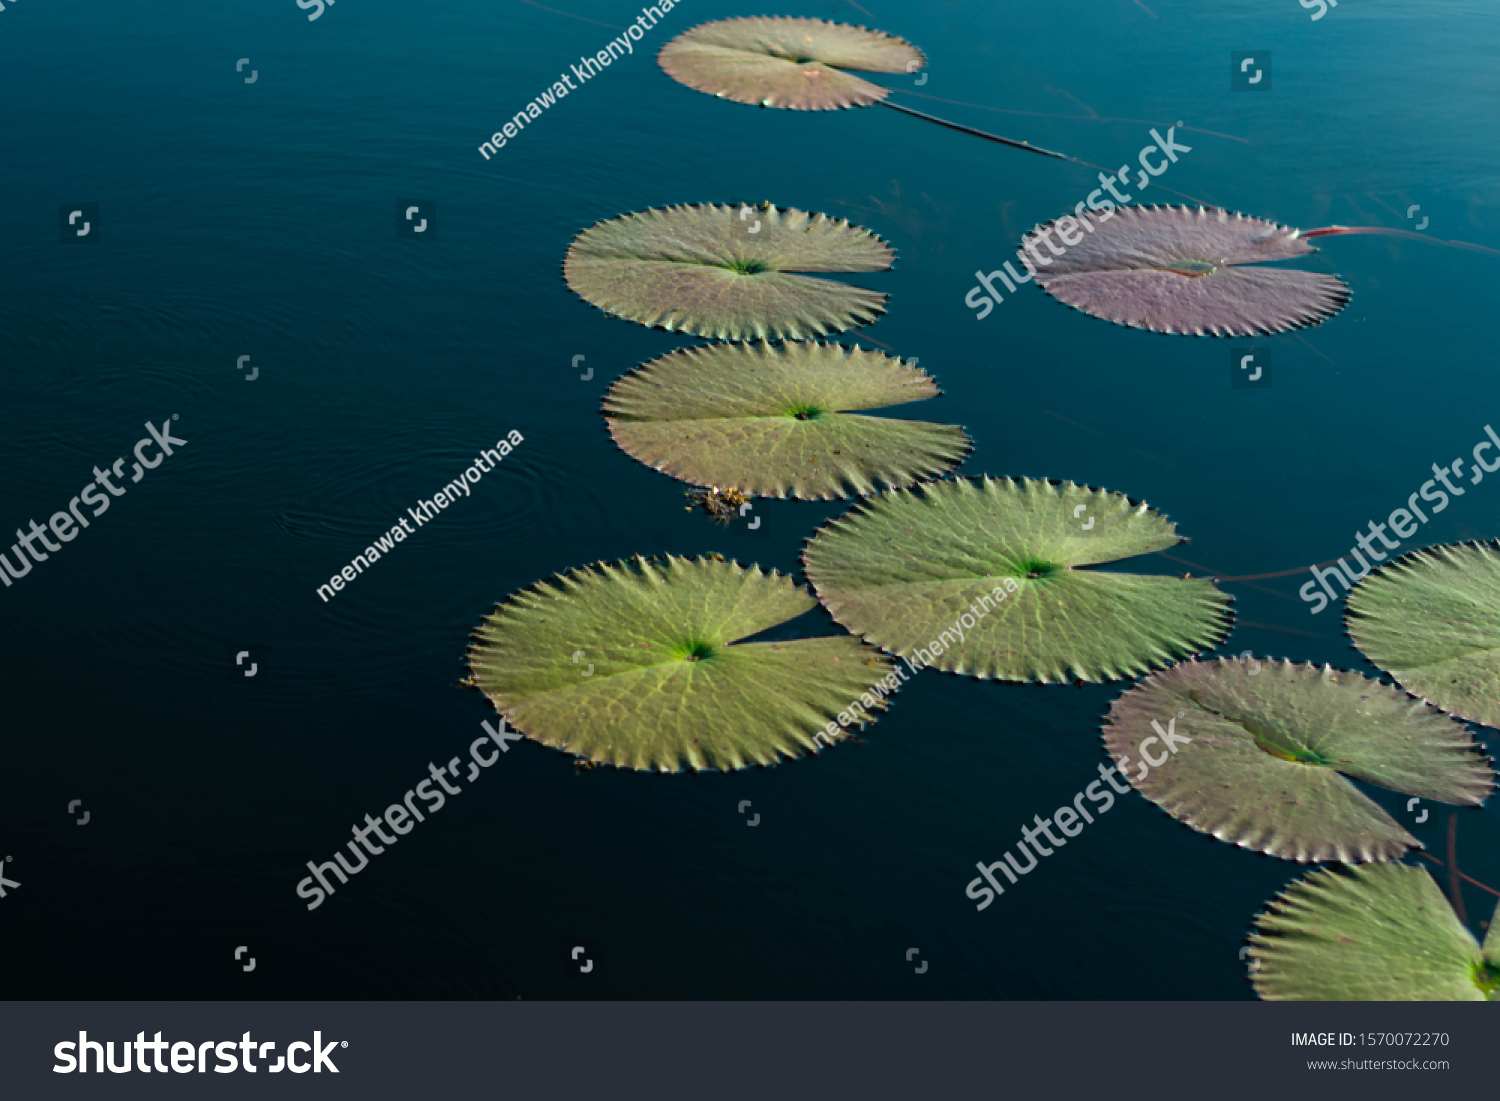 The red lotus leaf is growing in deep water. #1570072270